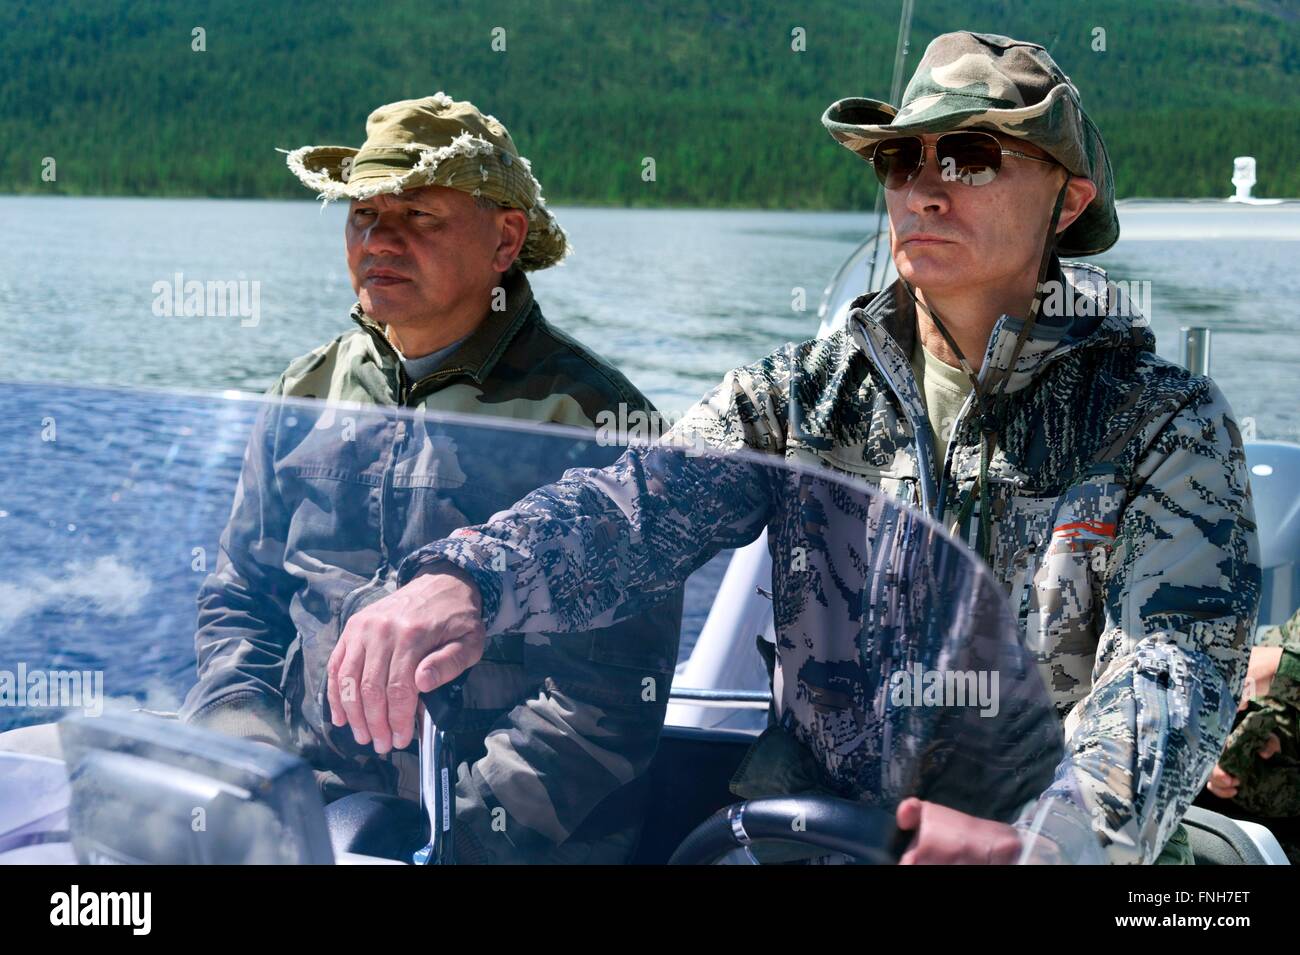 Il presidente russo Vladimir Putin a fianco il Ministro della difesa Sergei Shoigu pilota di una barca a motore durante una breve vacanza Luglio 20, 2013, il Siberiano Tyva regione, Russia Foto Stock